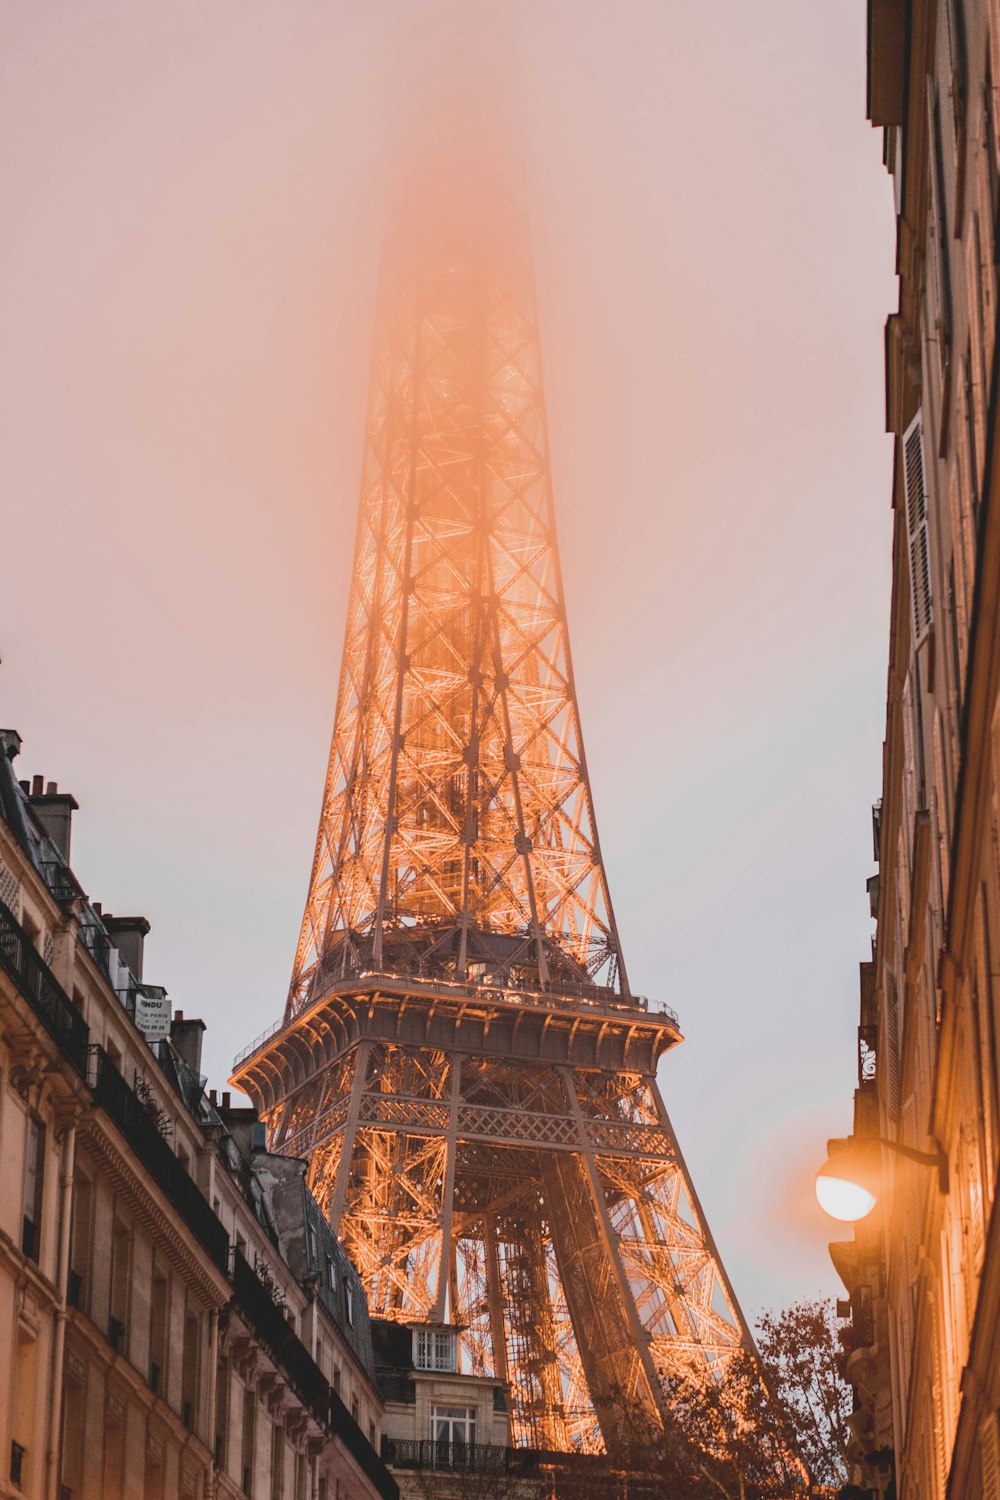 Eiffel Tower, Paris in golden hour